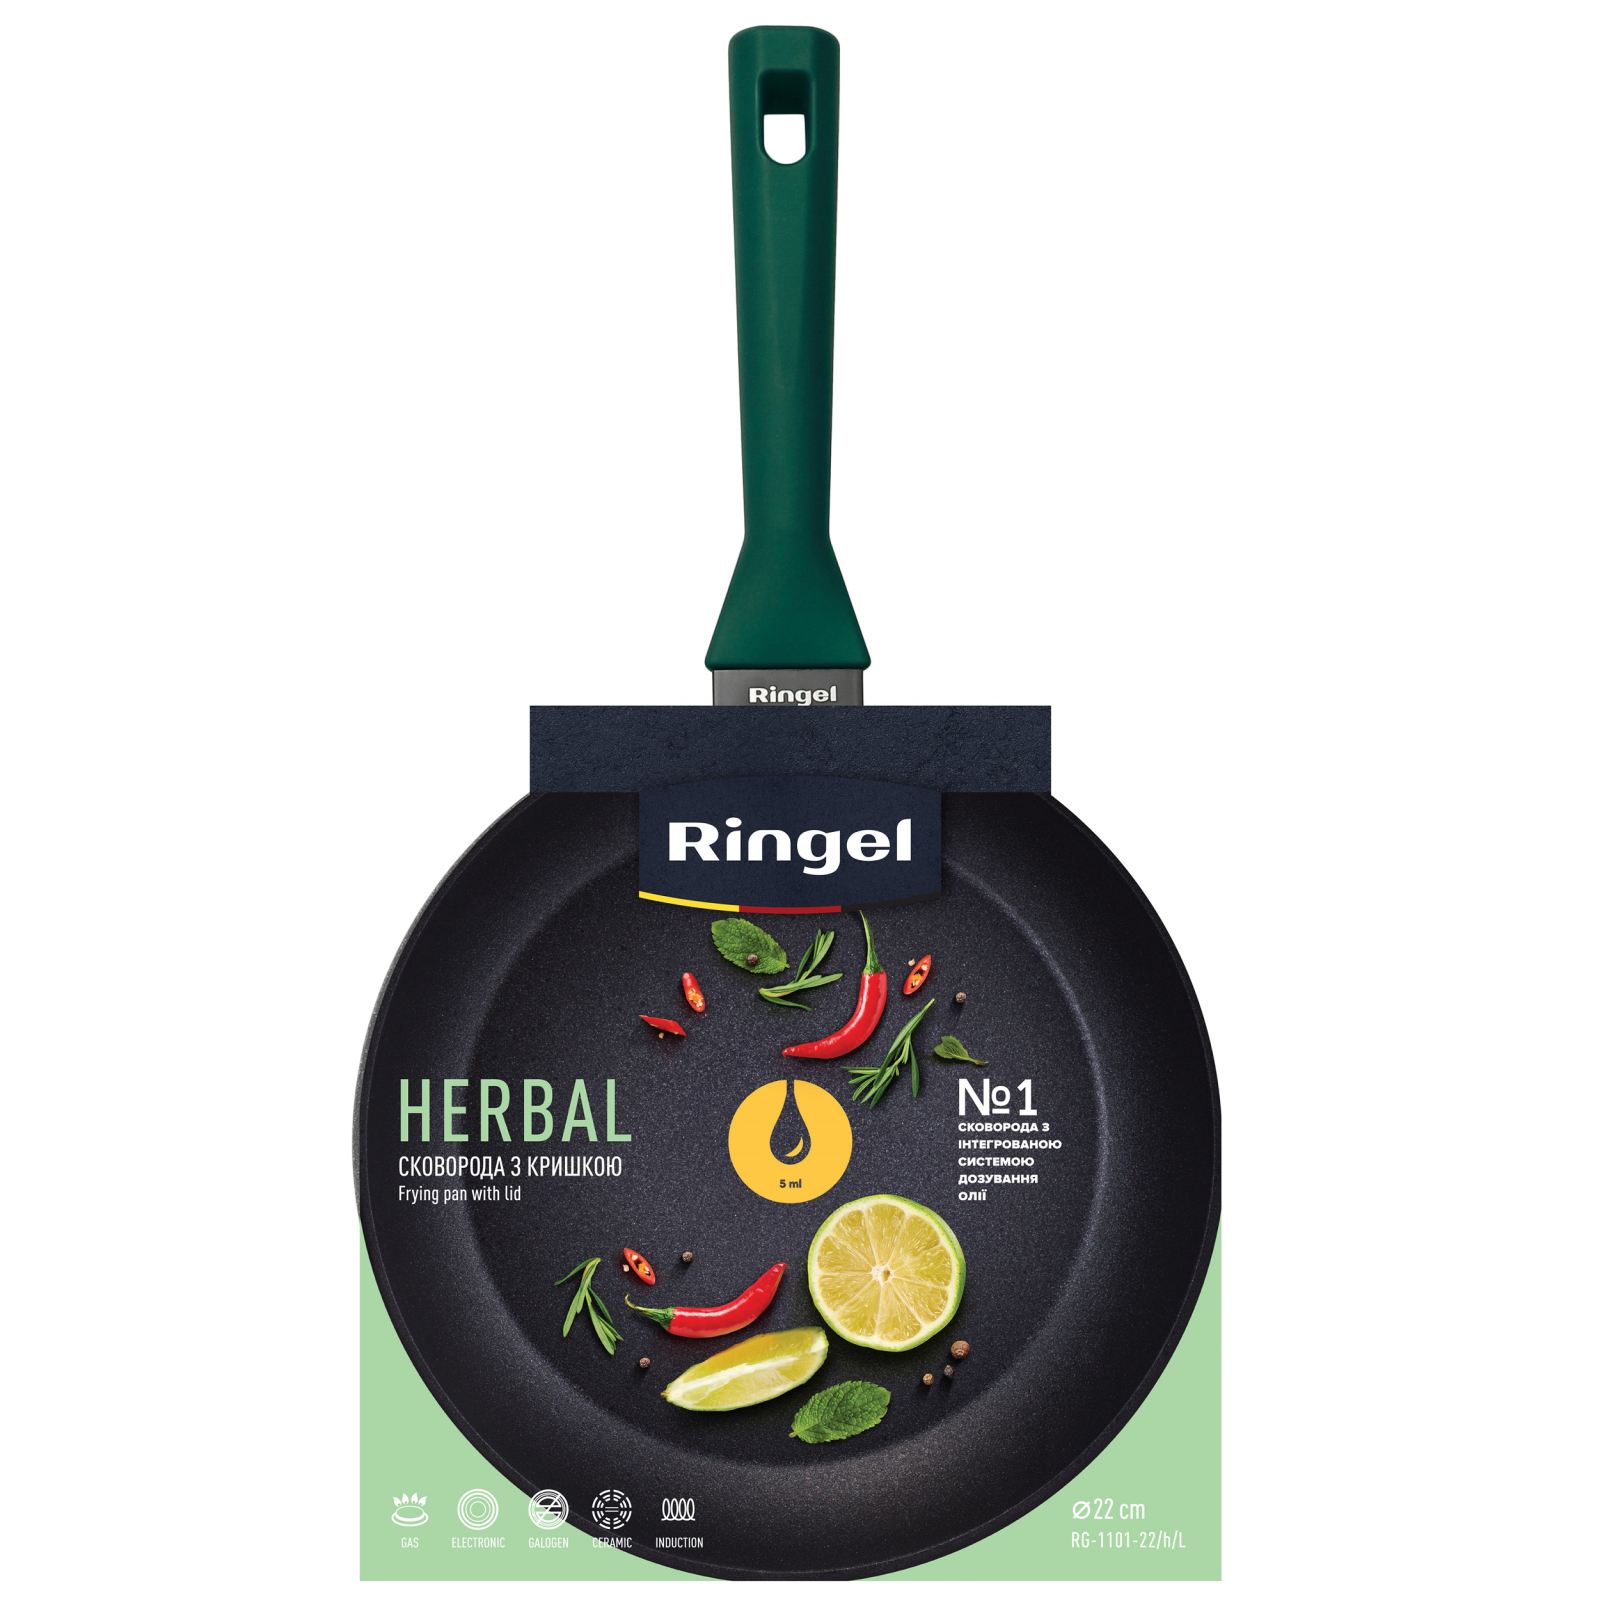 Сковорода Ringel Herbal 28 см (RG-1101-28/h/L) зображення 5